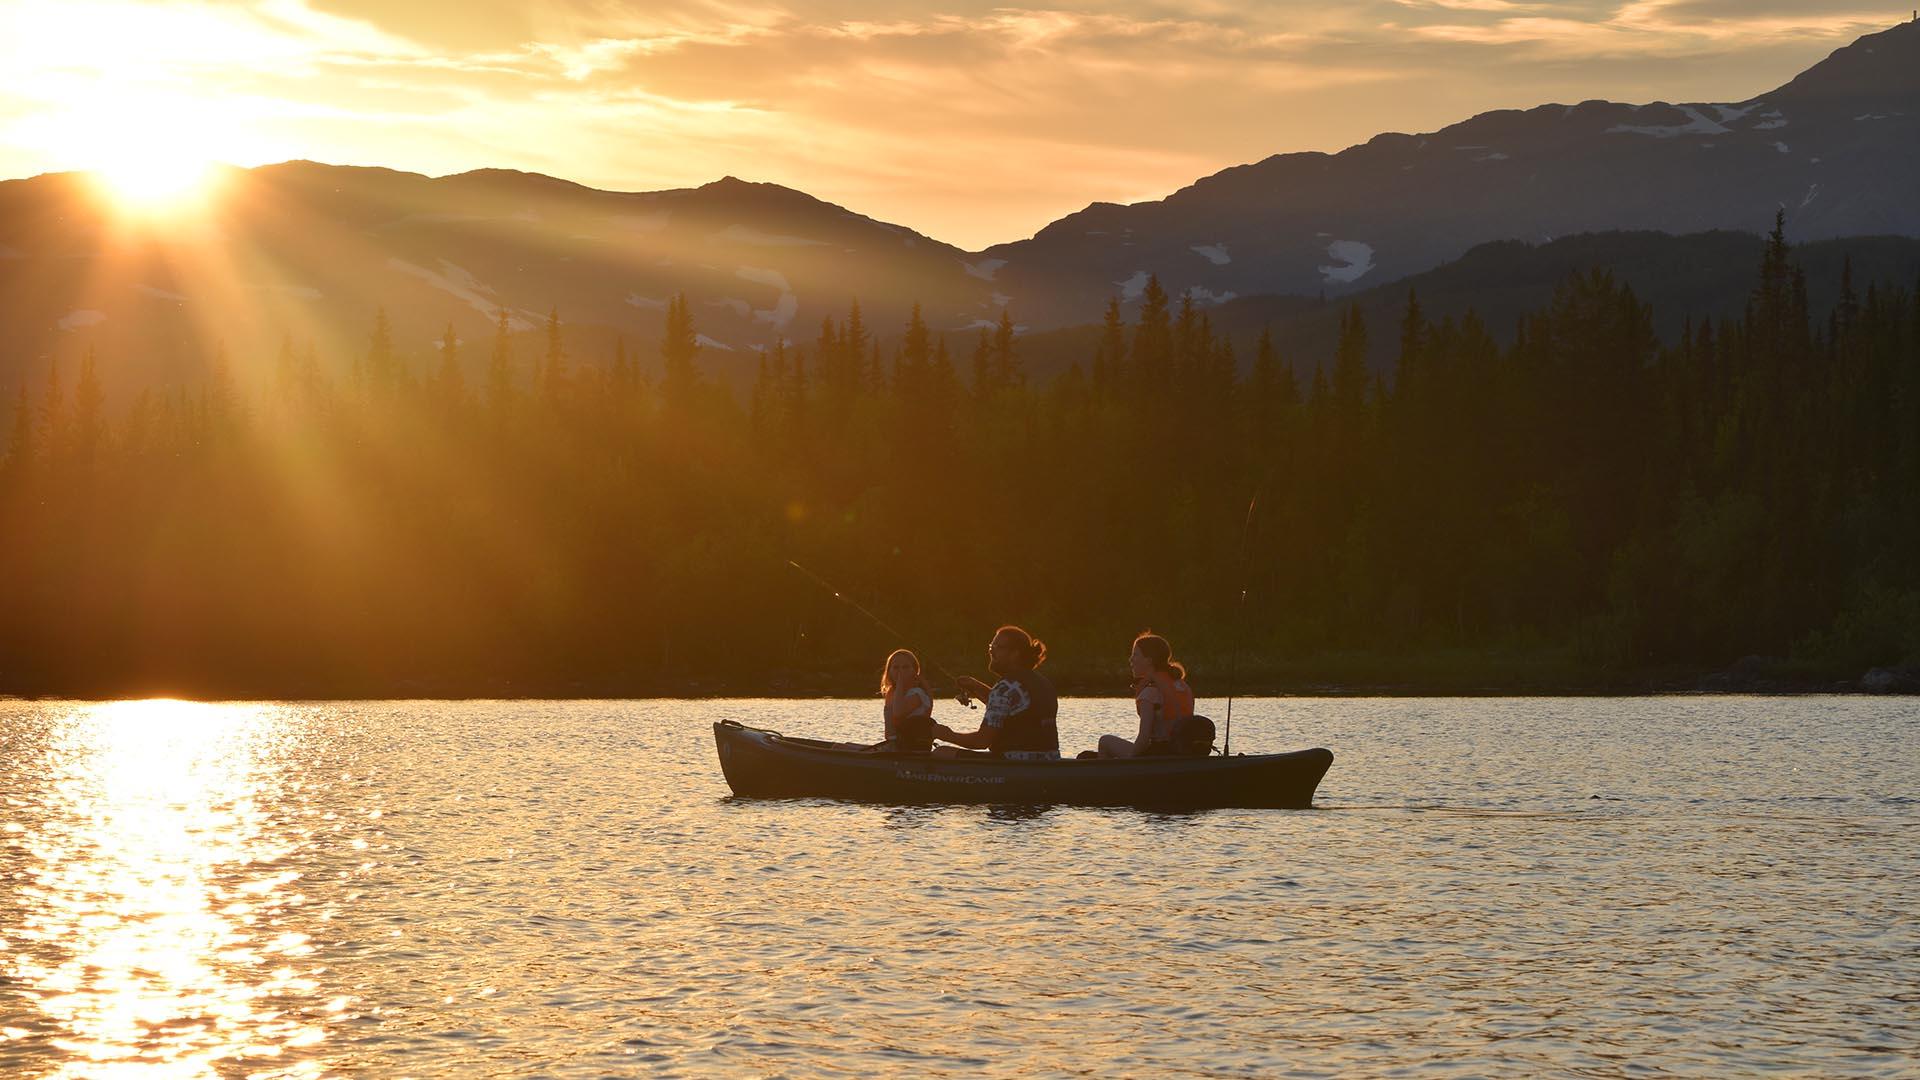 En kano med tre personer i som fisker på et vann med fjell i bakgrunnen. Sola går ned bak fjellet og farger hele himmelen og vannet gult.